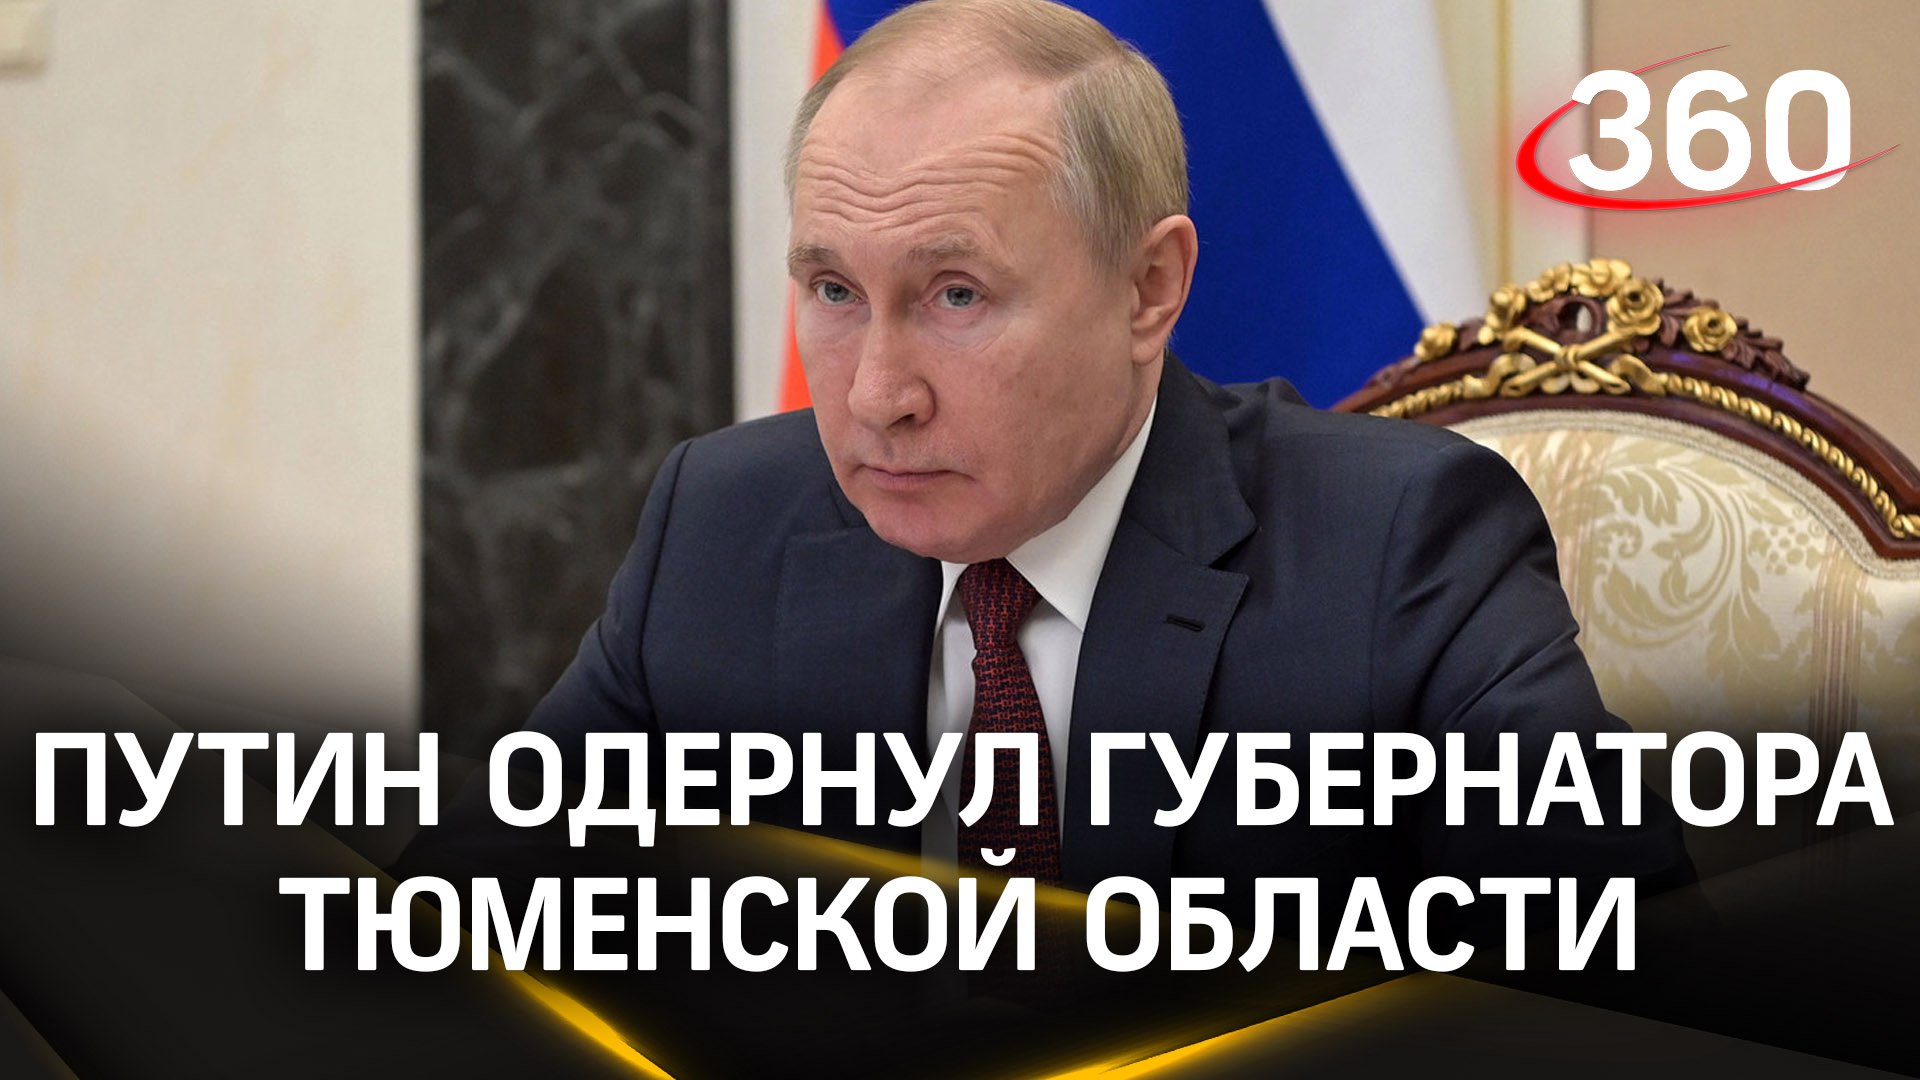 «Не надо так о людях, не смешно!» Путин одернул главу Тюменской области за слова об упертых земляках